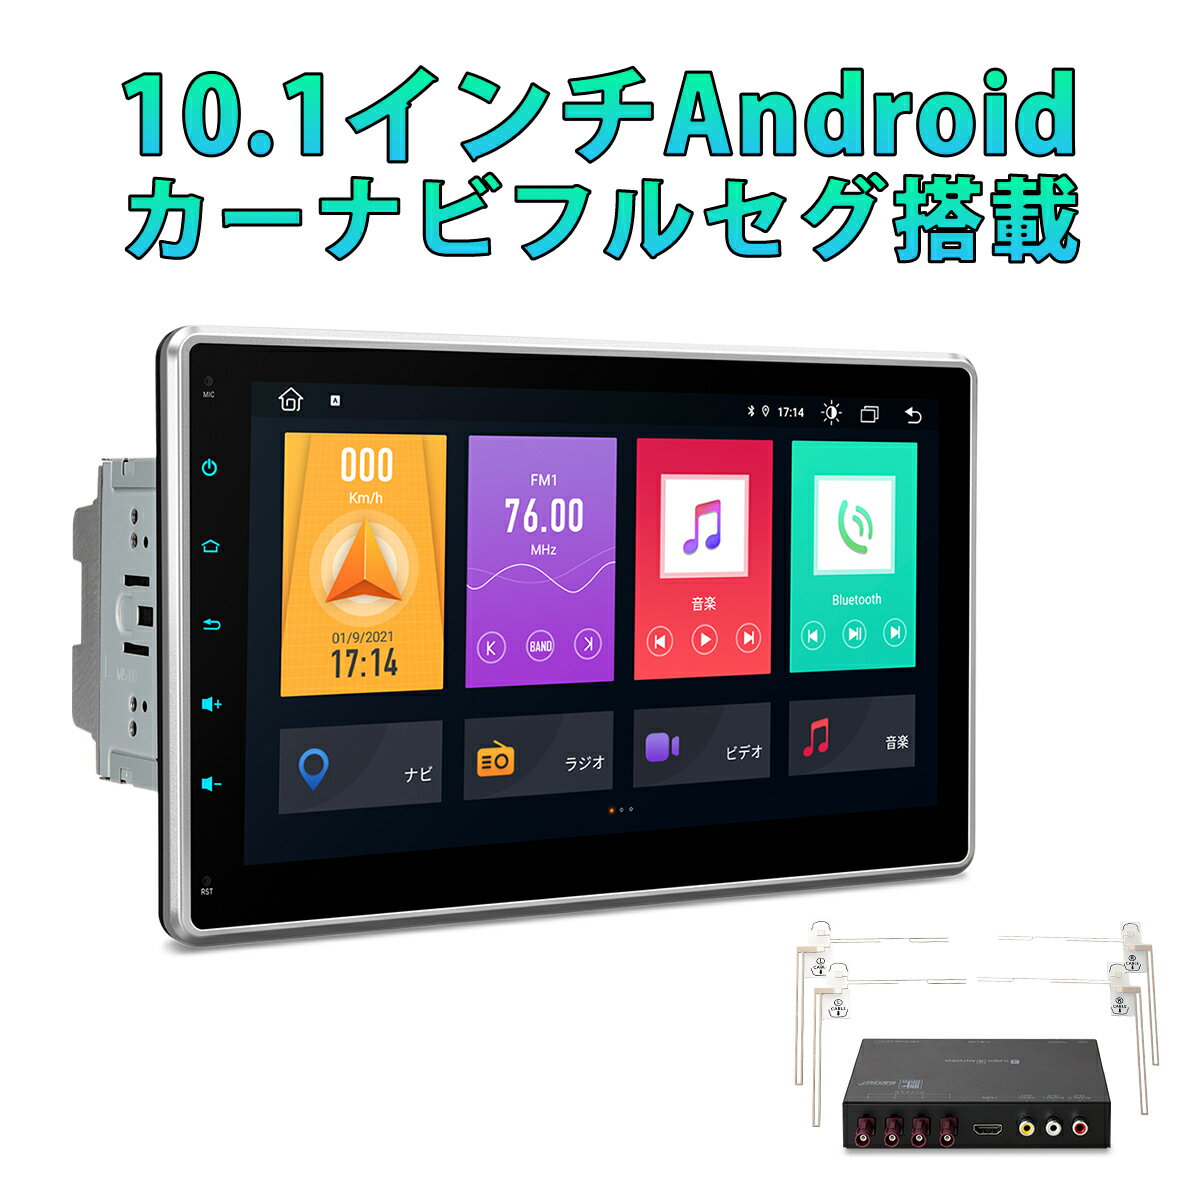 カーナビ フルセグ 10インチ XTRONS 8コア Android10.0 ROM32GB+RAM2GB 地デジ搭載 静電式 2DIN 一体型車載PC WIFI OBD2 4G WIFI ミラーリング CarPlay連携対応(TME100SIL)